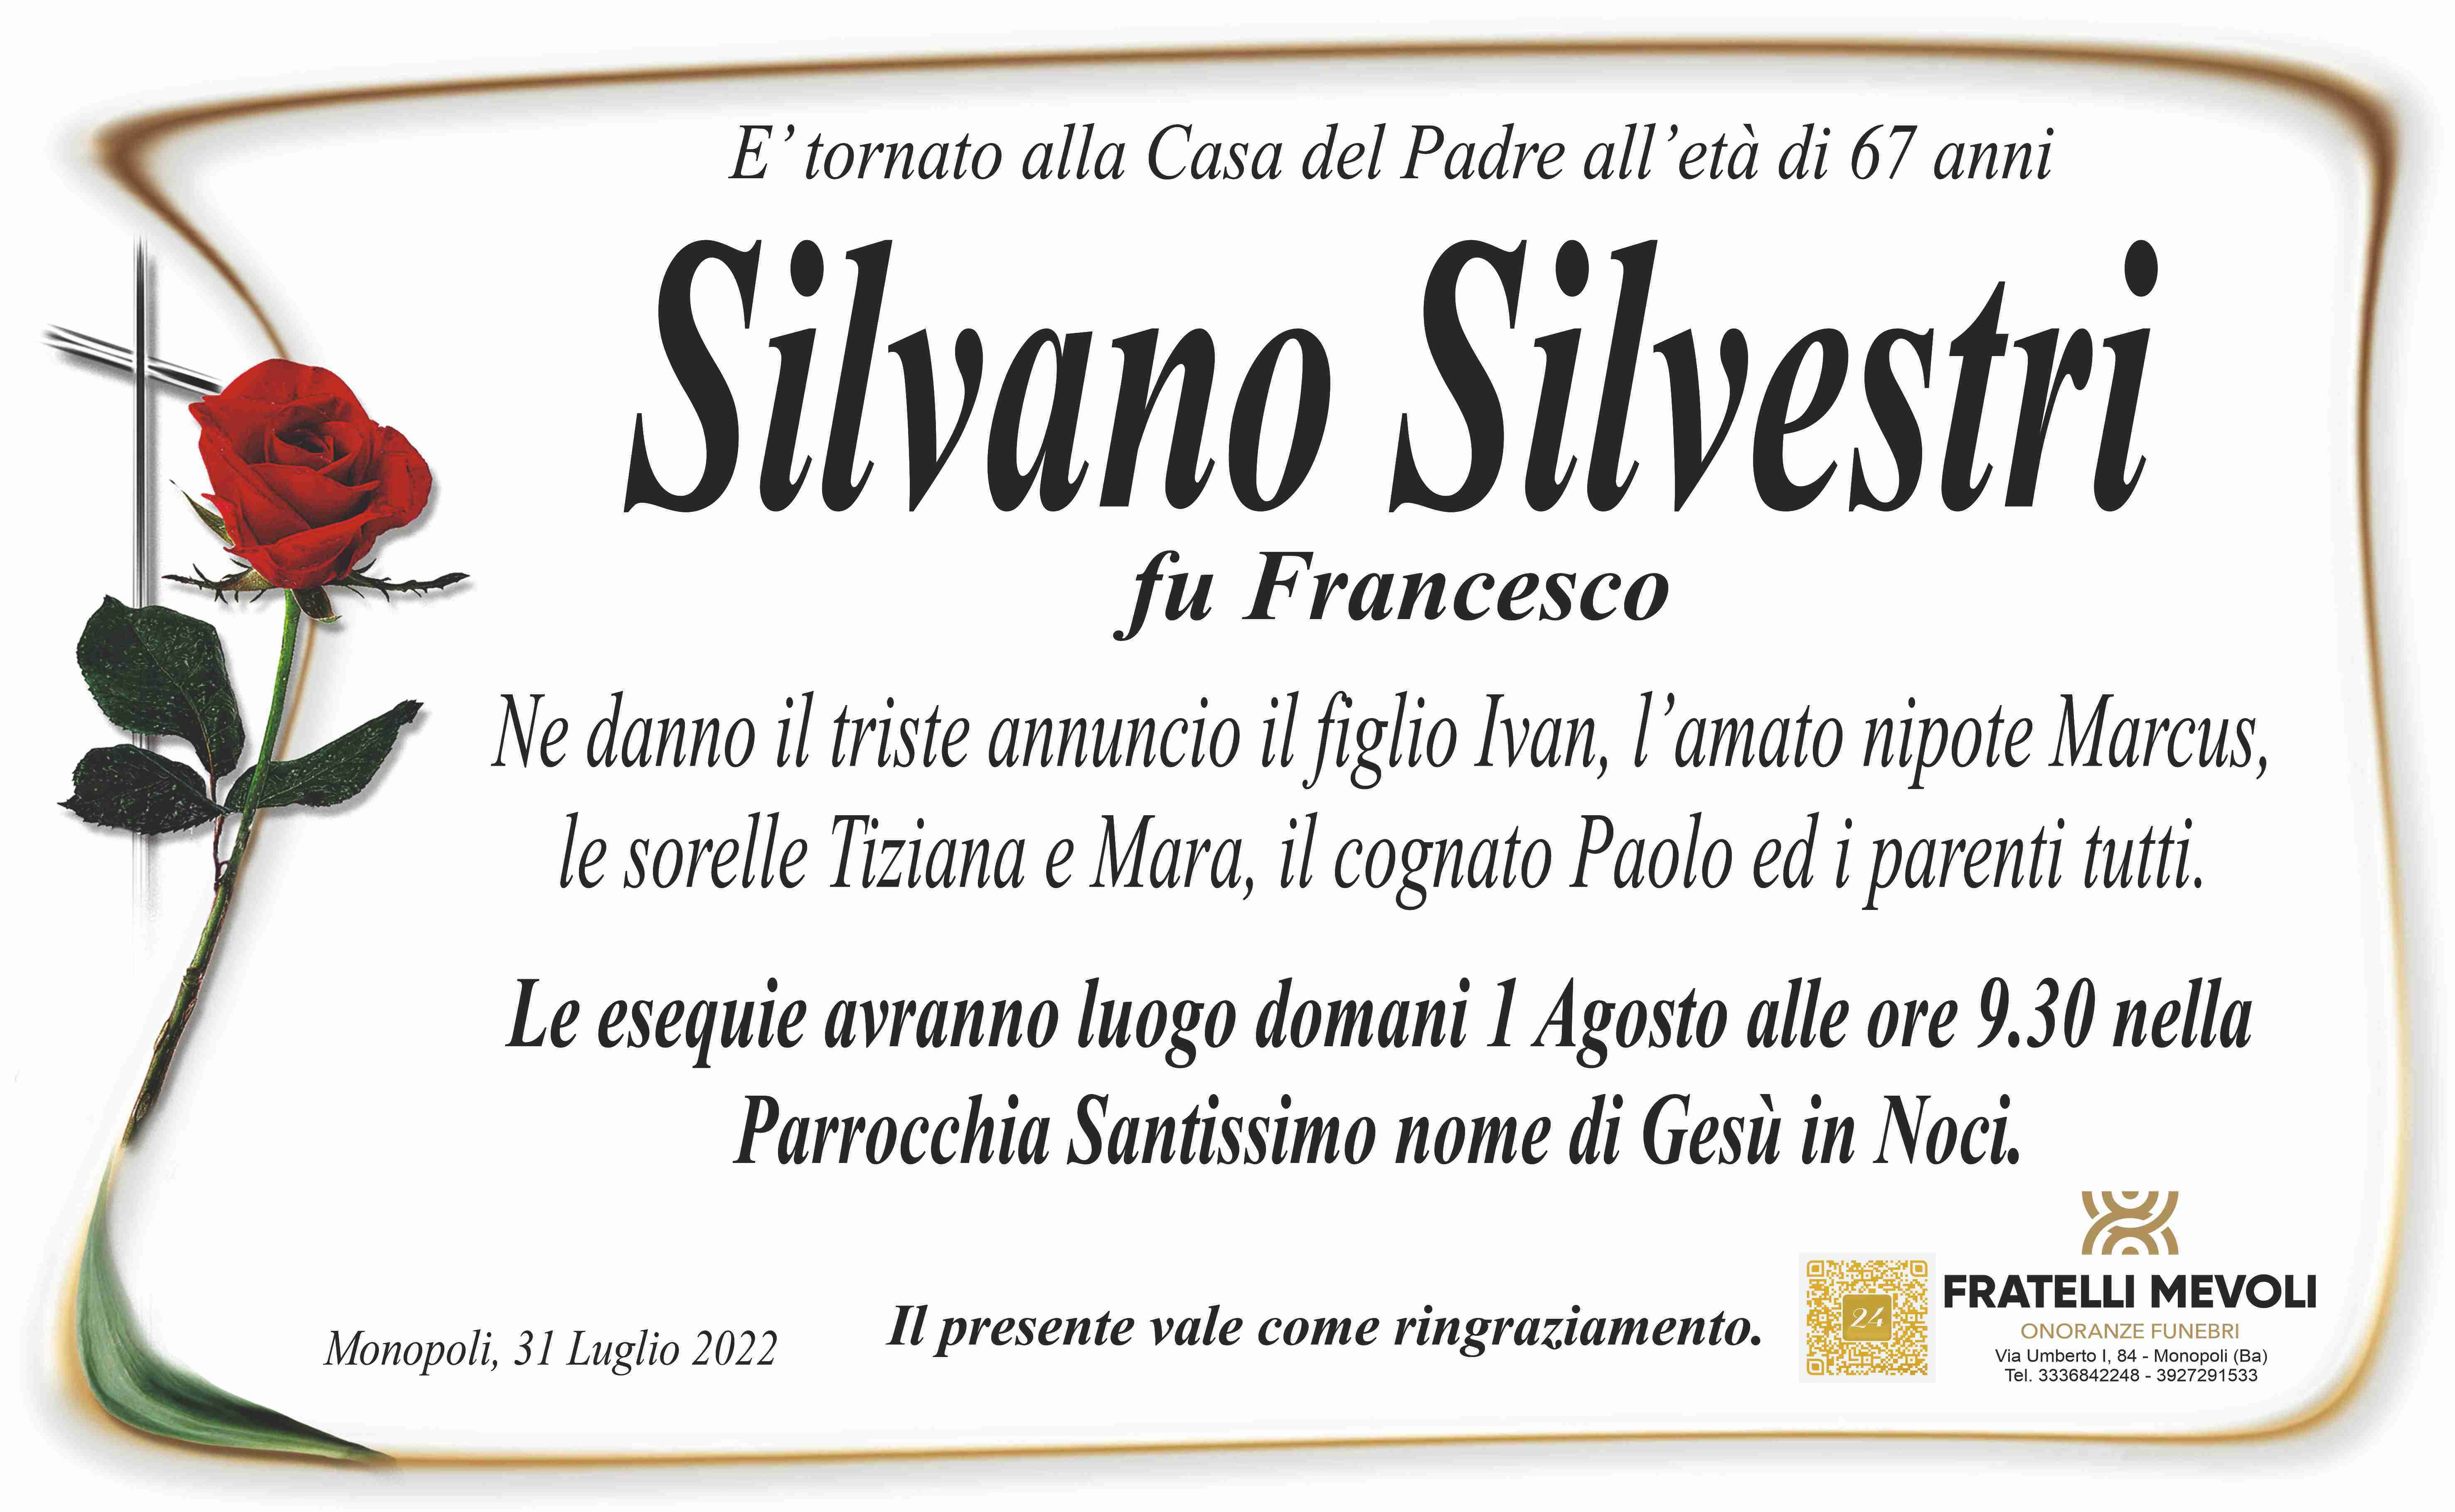 Silvano Silvestri